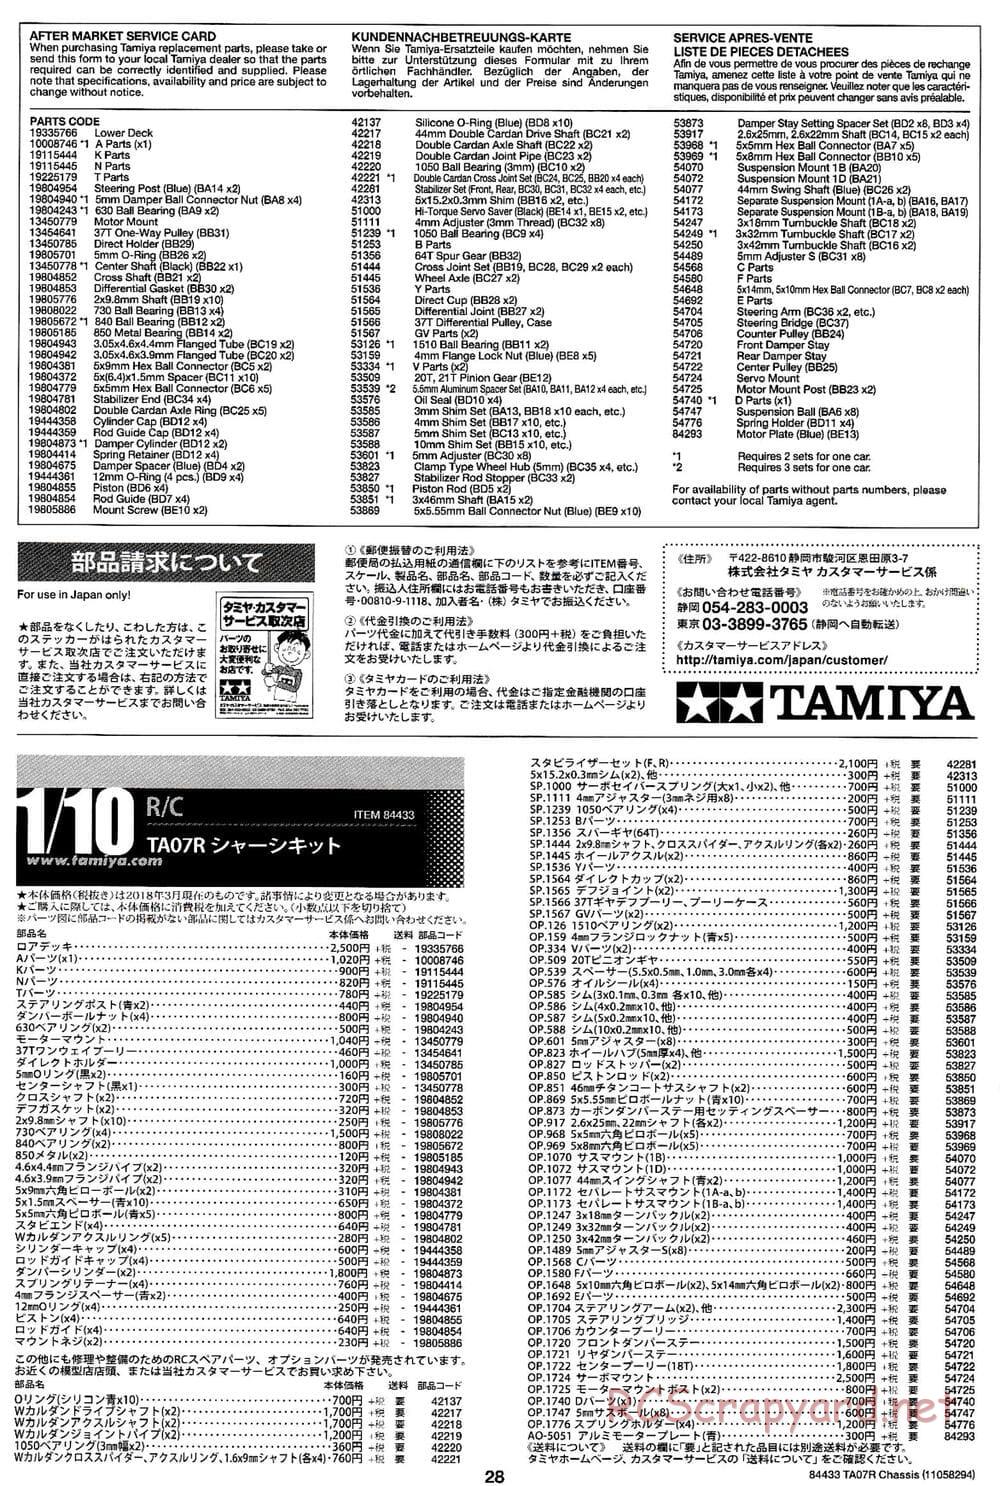 Tamiya - TA07 R Chassis - Manual - Page 28